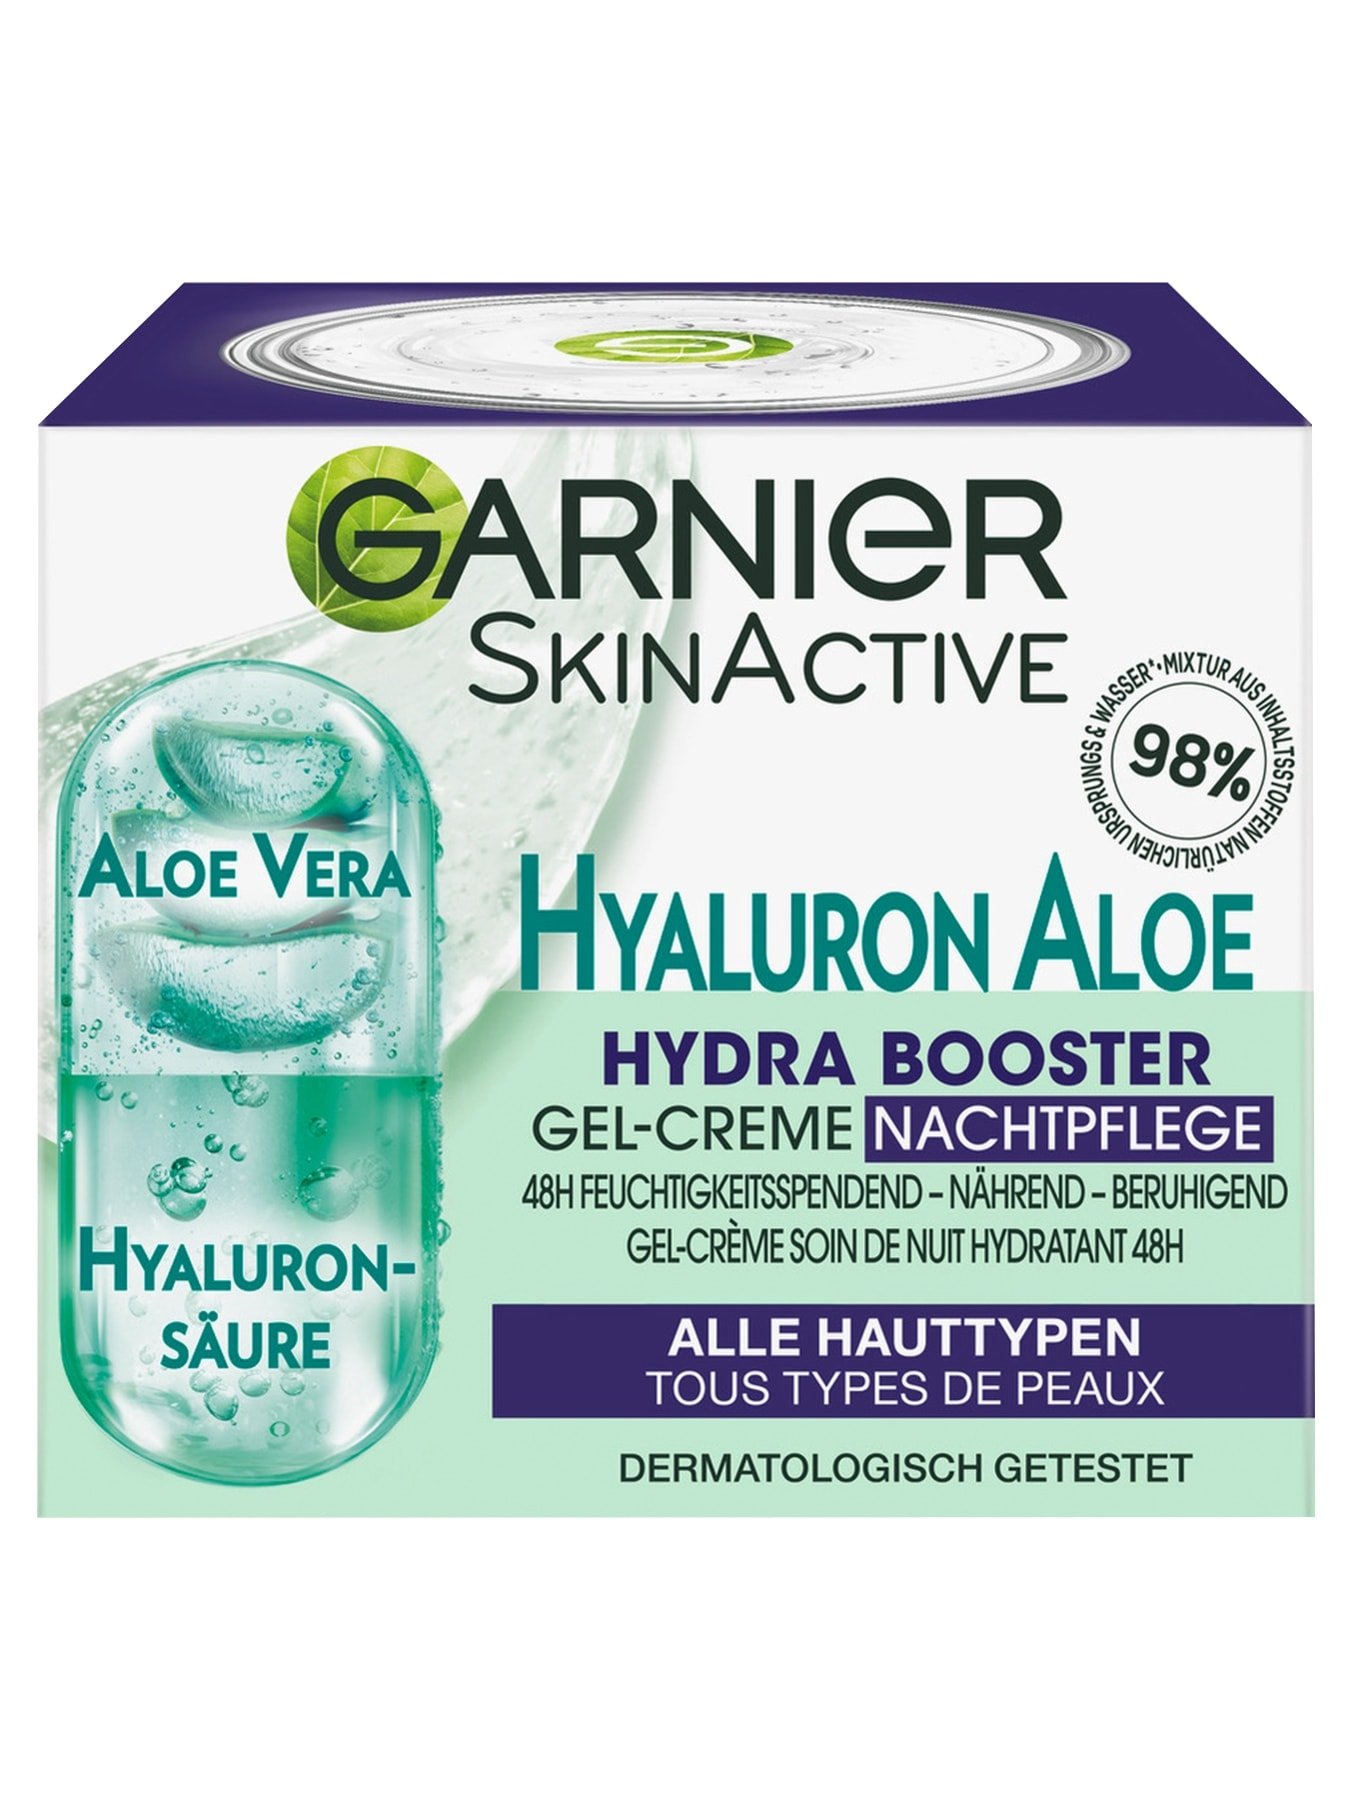 Hyaluron Aloe Hydra Booster Garnier Nachtpflege Gel-Creme 